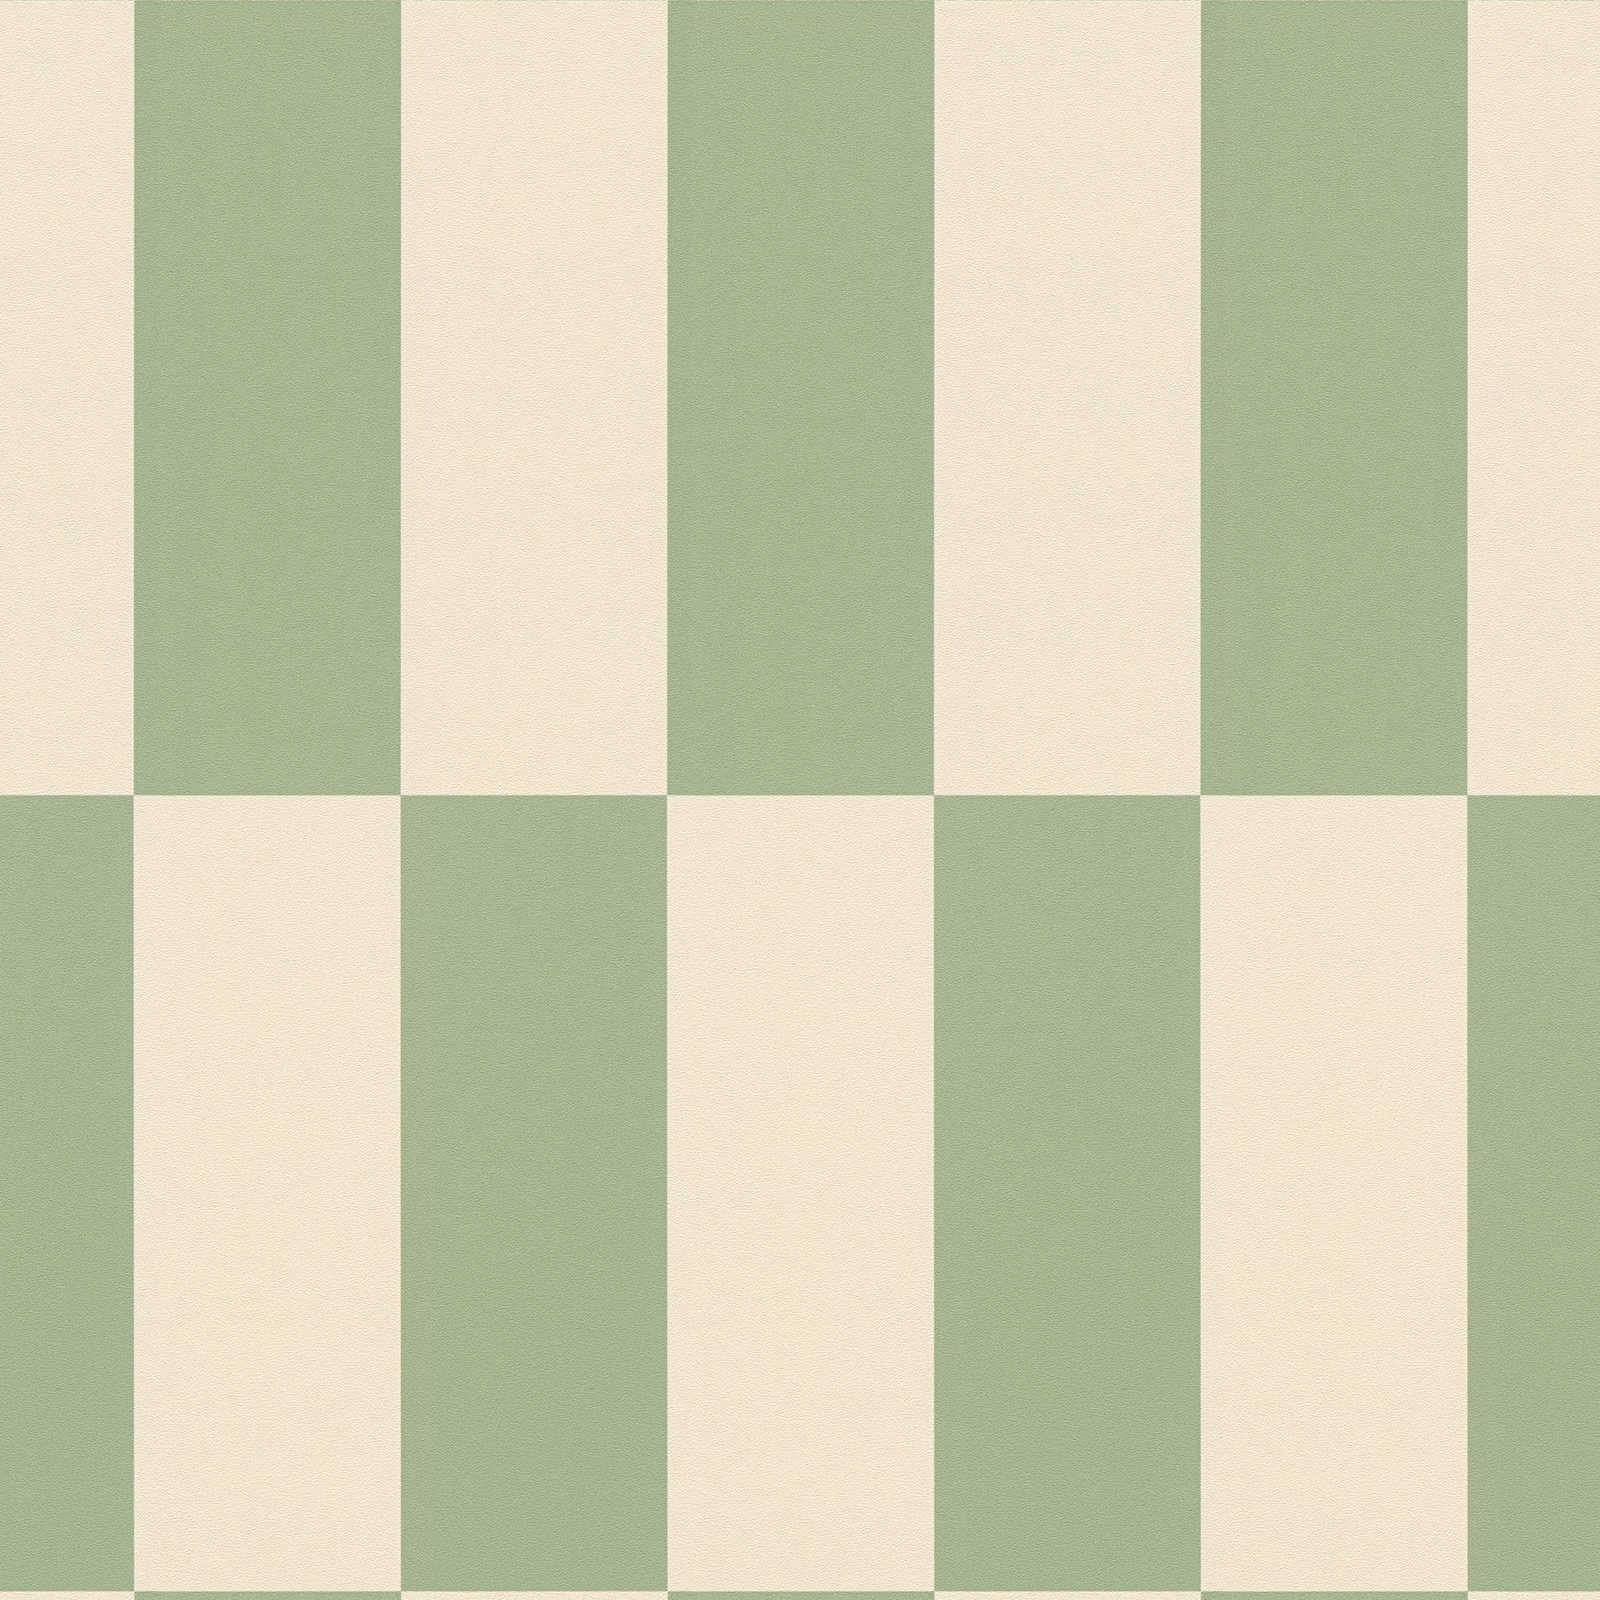             Vliesbehang grafische vierkanten tweekleurig - beige, groen
        